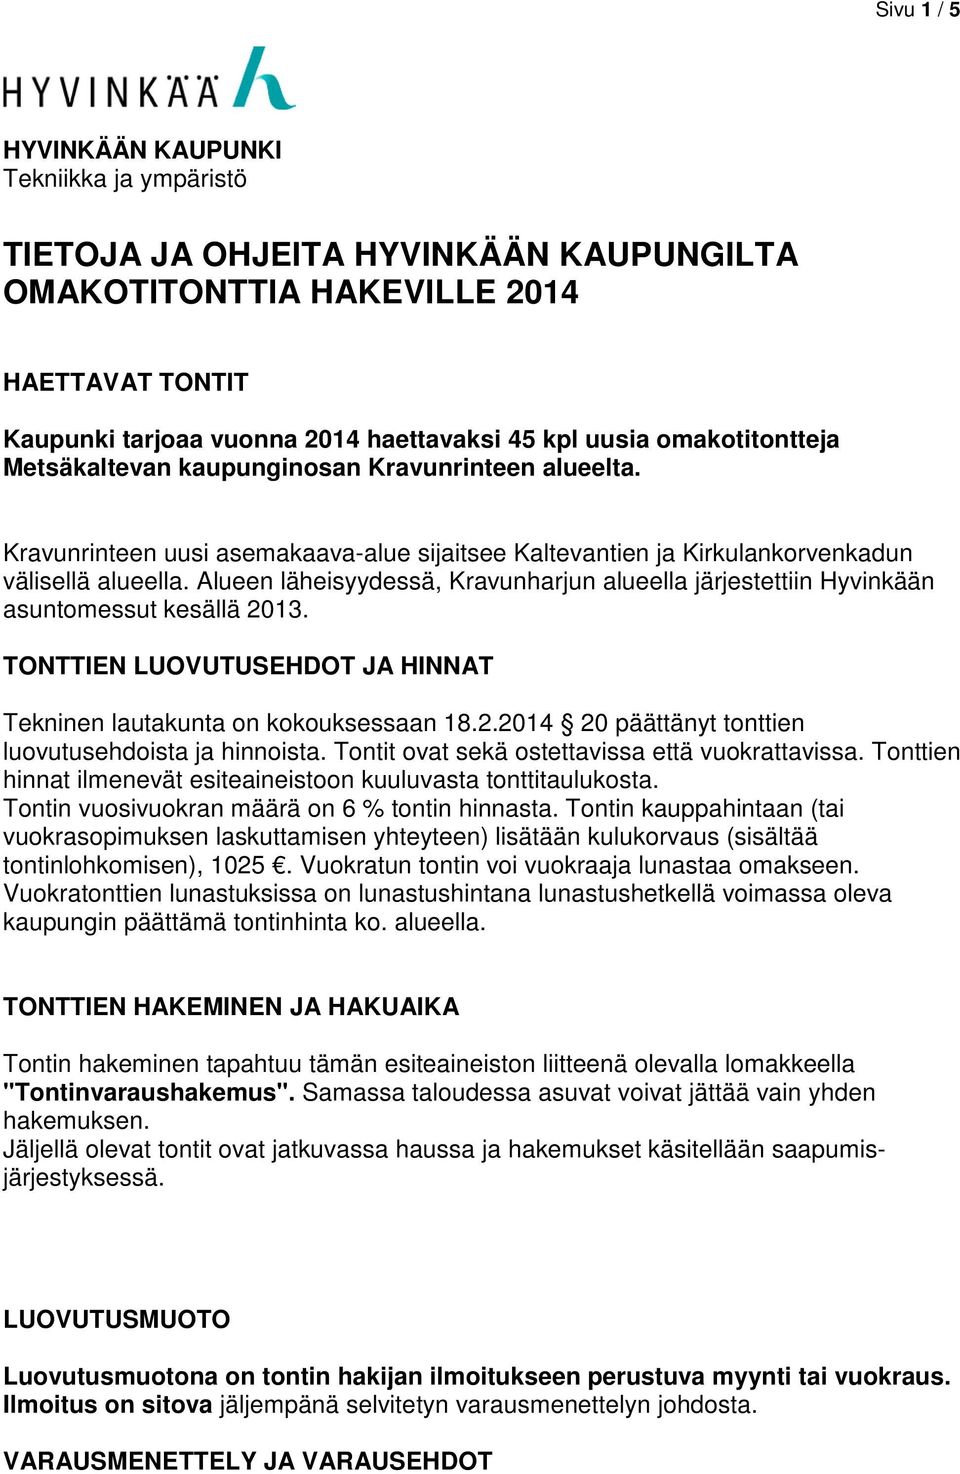 Alueen läheisyydessä, Kravunharjun alueella järjestettiin Hyvinkään asuntomessut kesällä 2013. TONTTIEN LUOVUTUSEHDOT JA HINNAT Tekninen lautakunta on kokouksessaan 18.2.2014 20 päättänyt tonttien luovutusehdoista ja hinnoista.